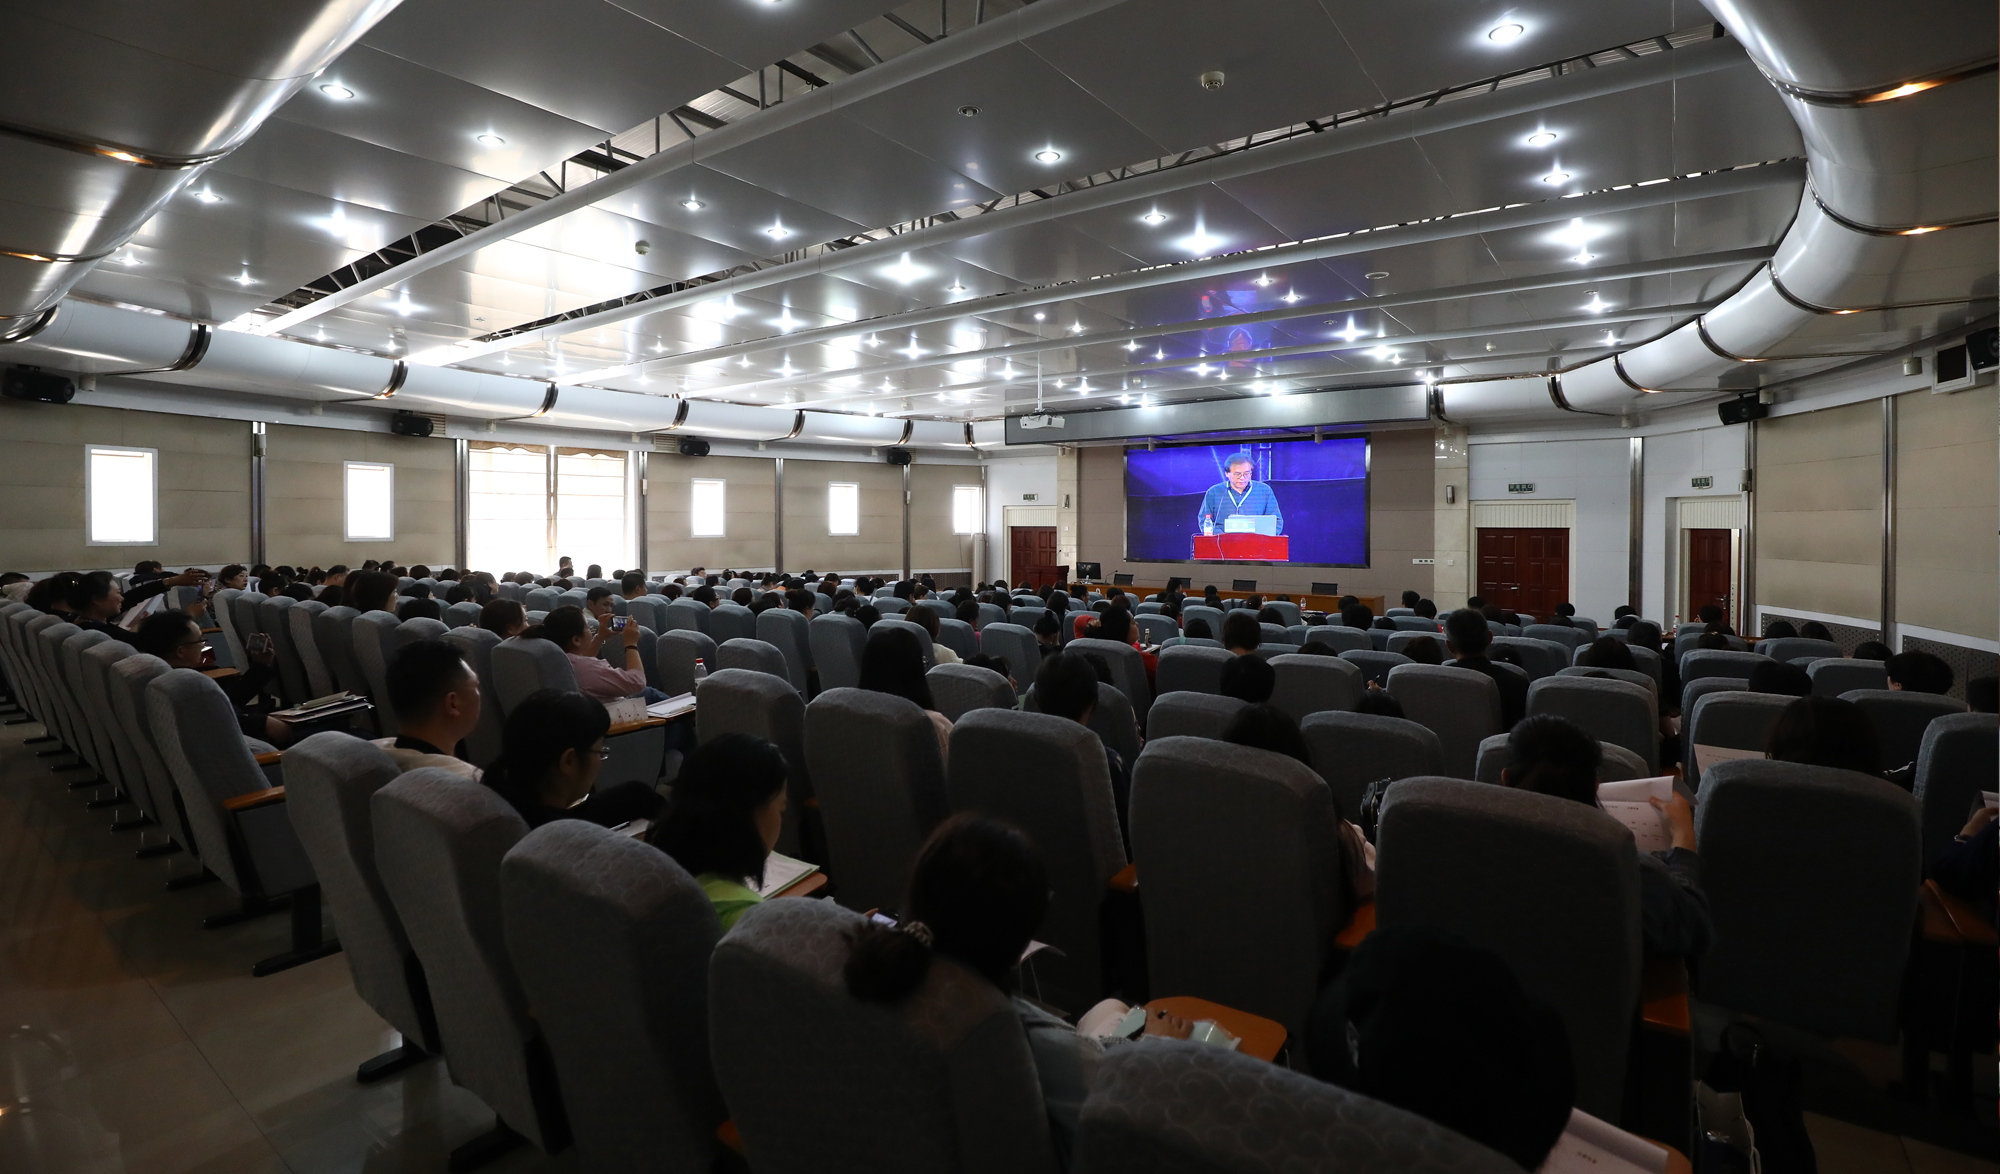 本次峰会由北京中教市培教育研究院、鞍山市教育局、海城市教育局共同主办，图为分会场。